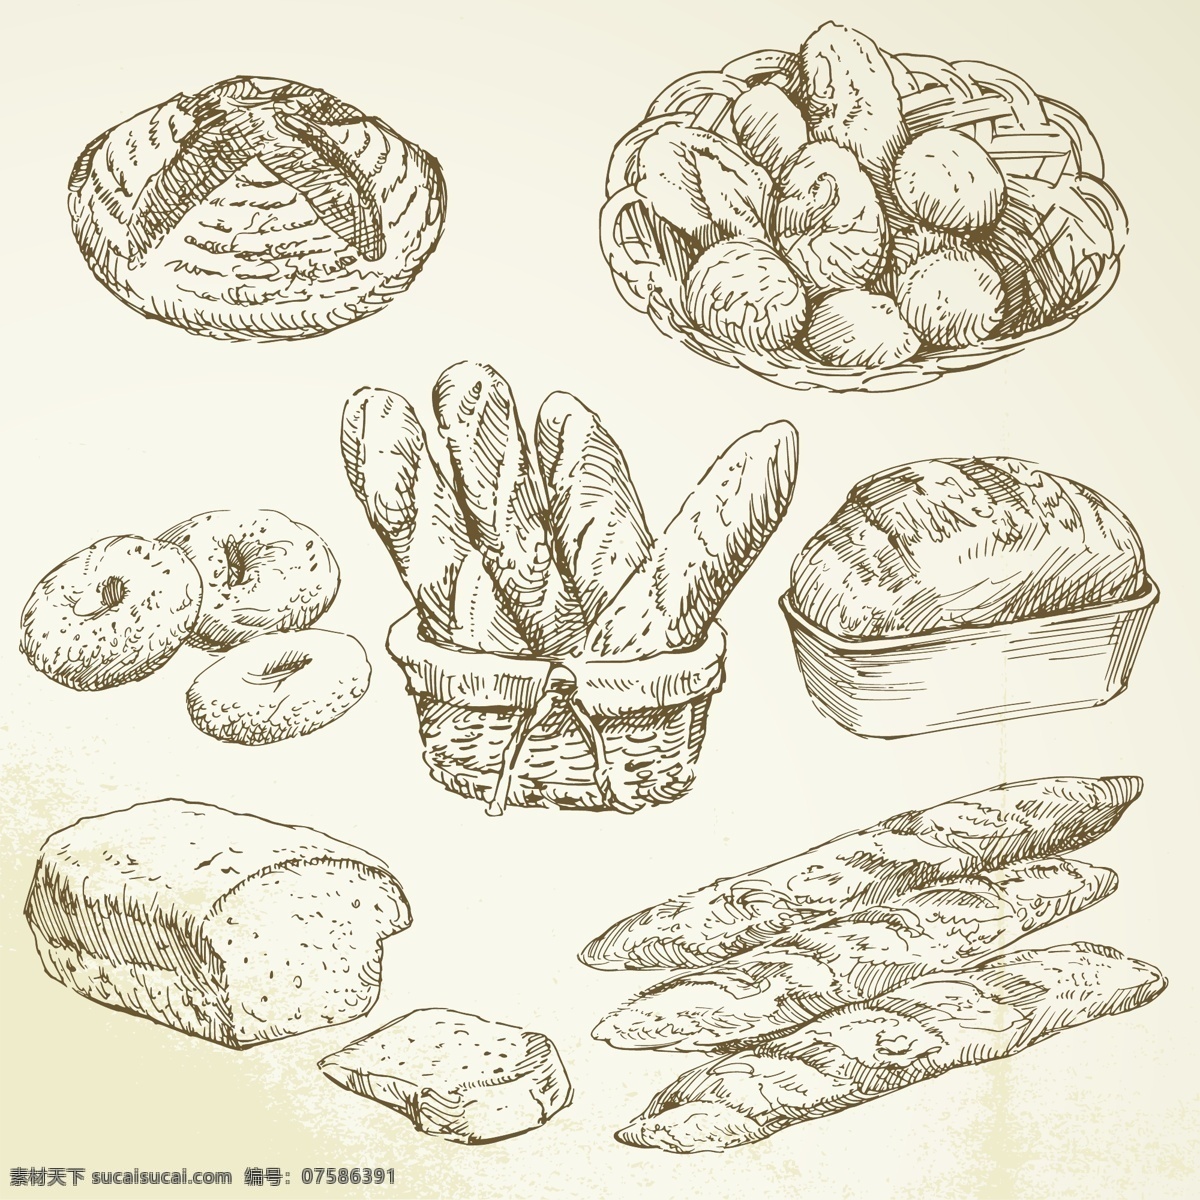 手绘食物 手绘 线稿 插画 速写 素描 食物 咖啡厅 西餐 蛋糕 面包 矢量素材 餐饮美食 生活百科 矢量